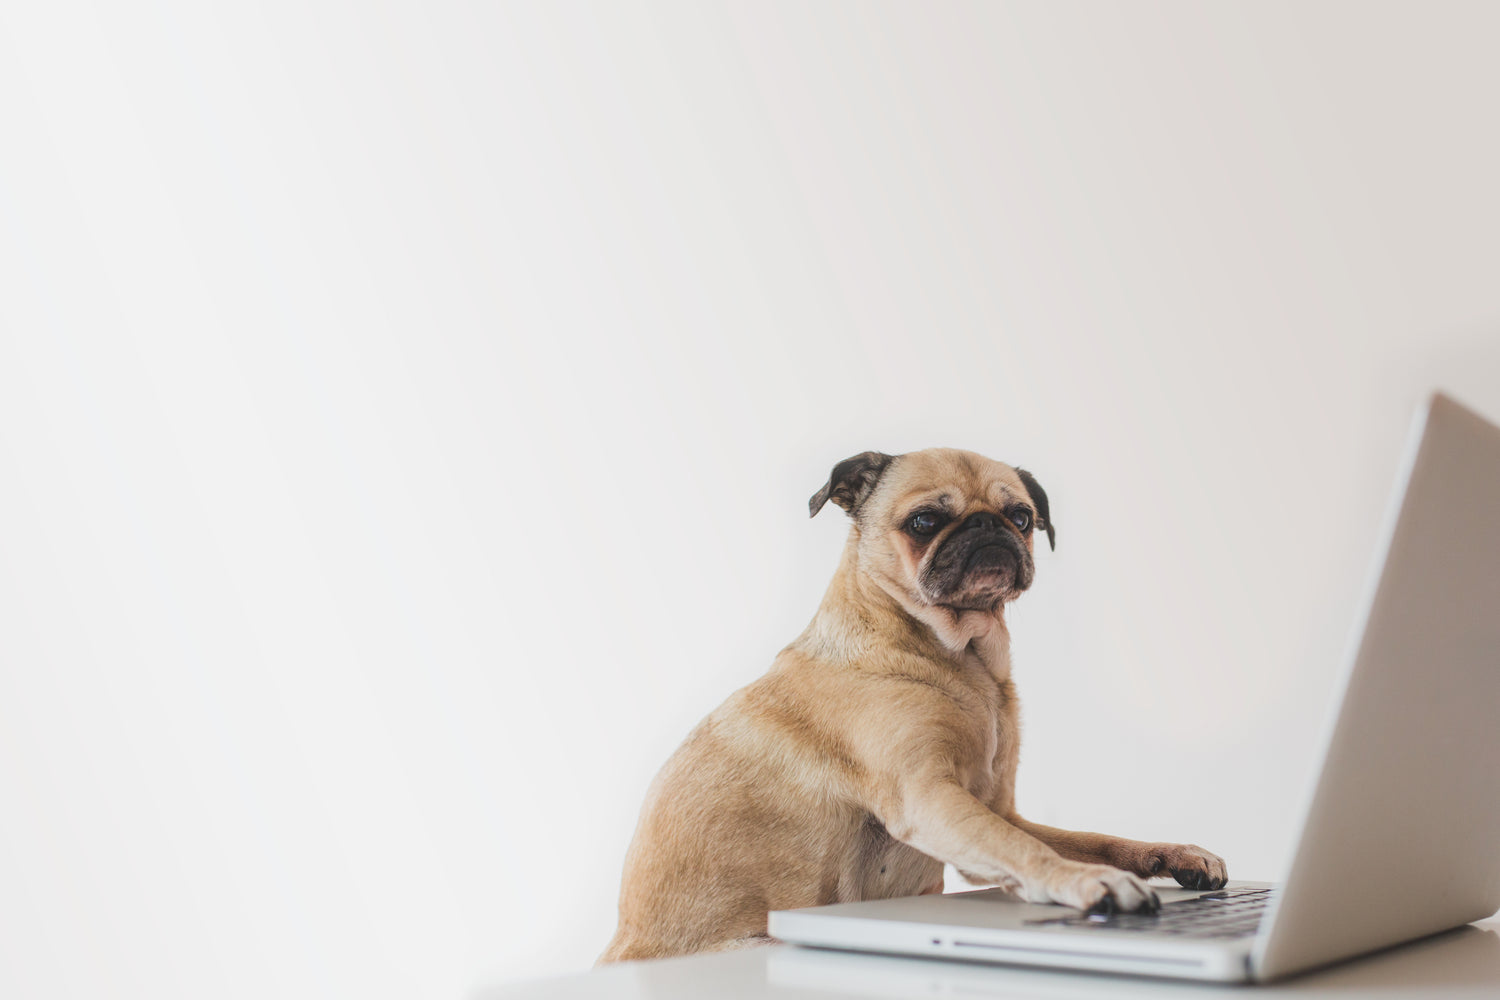 Petit chien assis devant un ordinateur portable, symbolisant de manière ludique la création de contenu